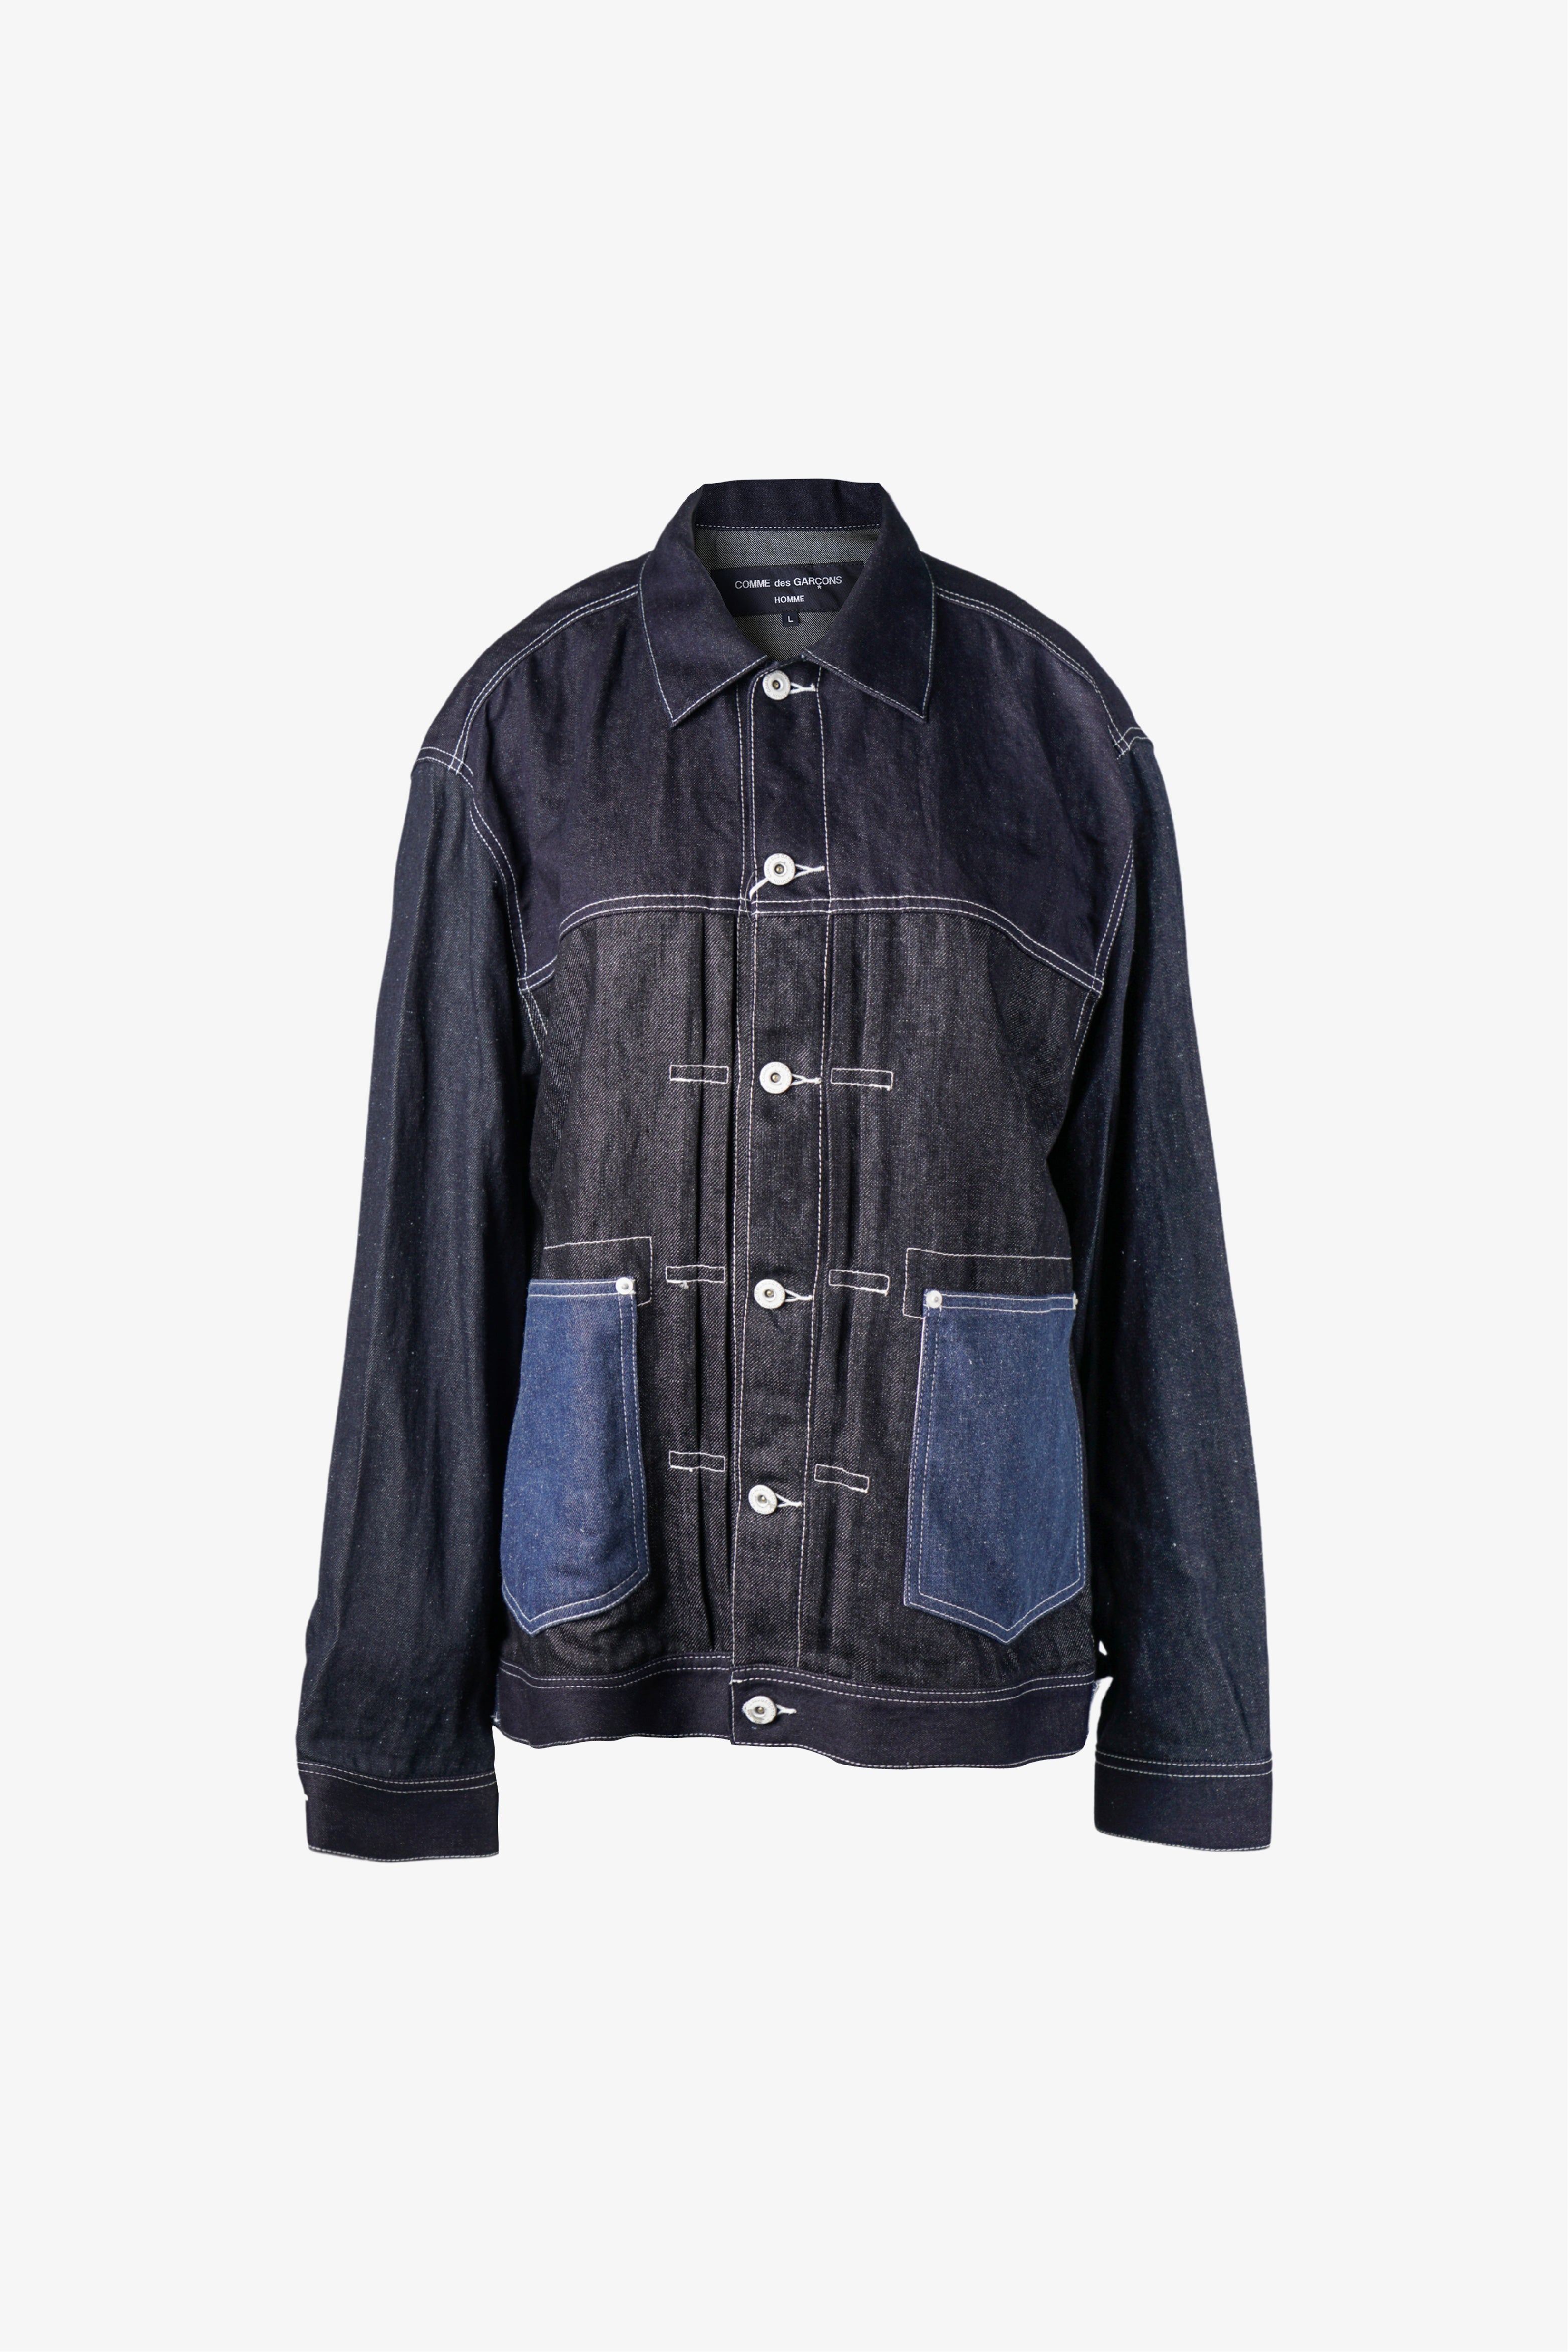 Selectshop FRAME - COMME DES GARÇONS HOMME Jacket Outerwear Dubai